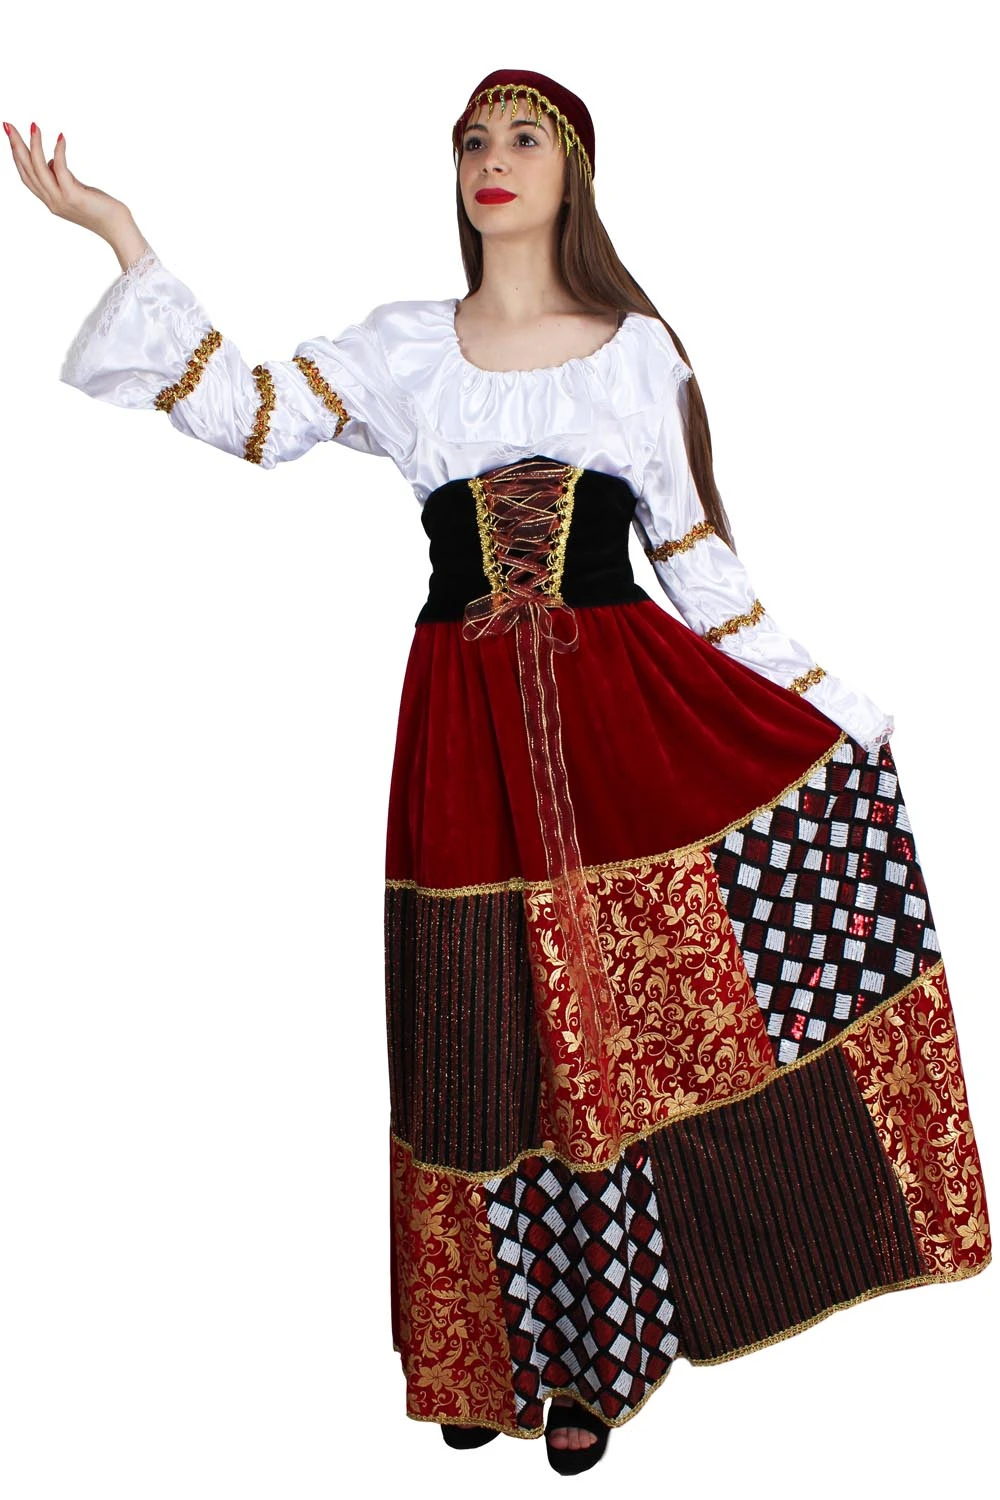 Carnaval Volwassen Kostuum Gypsy Jurk|Beschermende kleding accessoires| - AliExpress